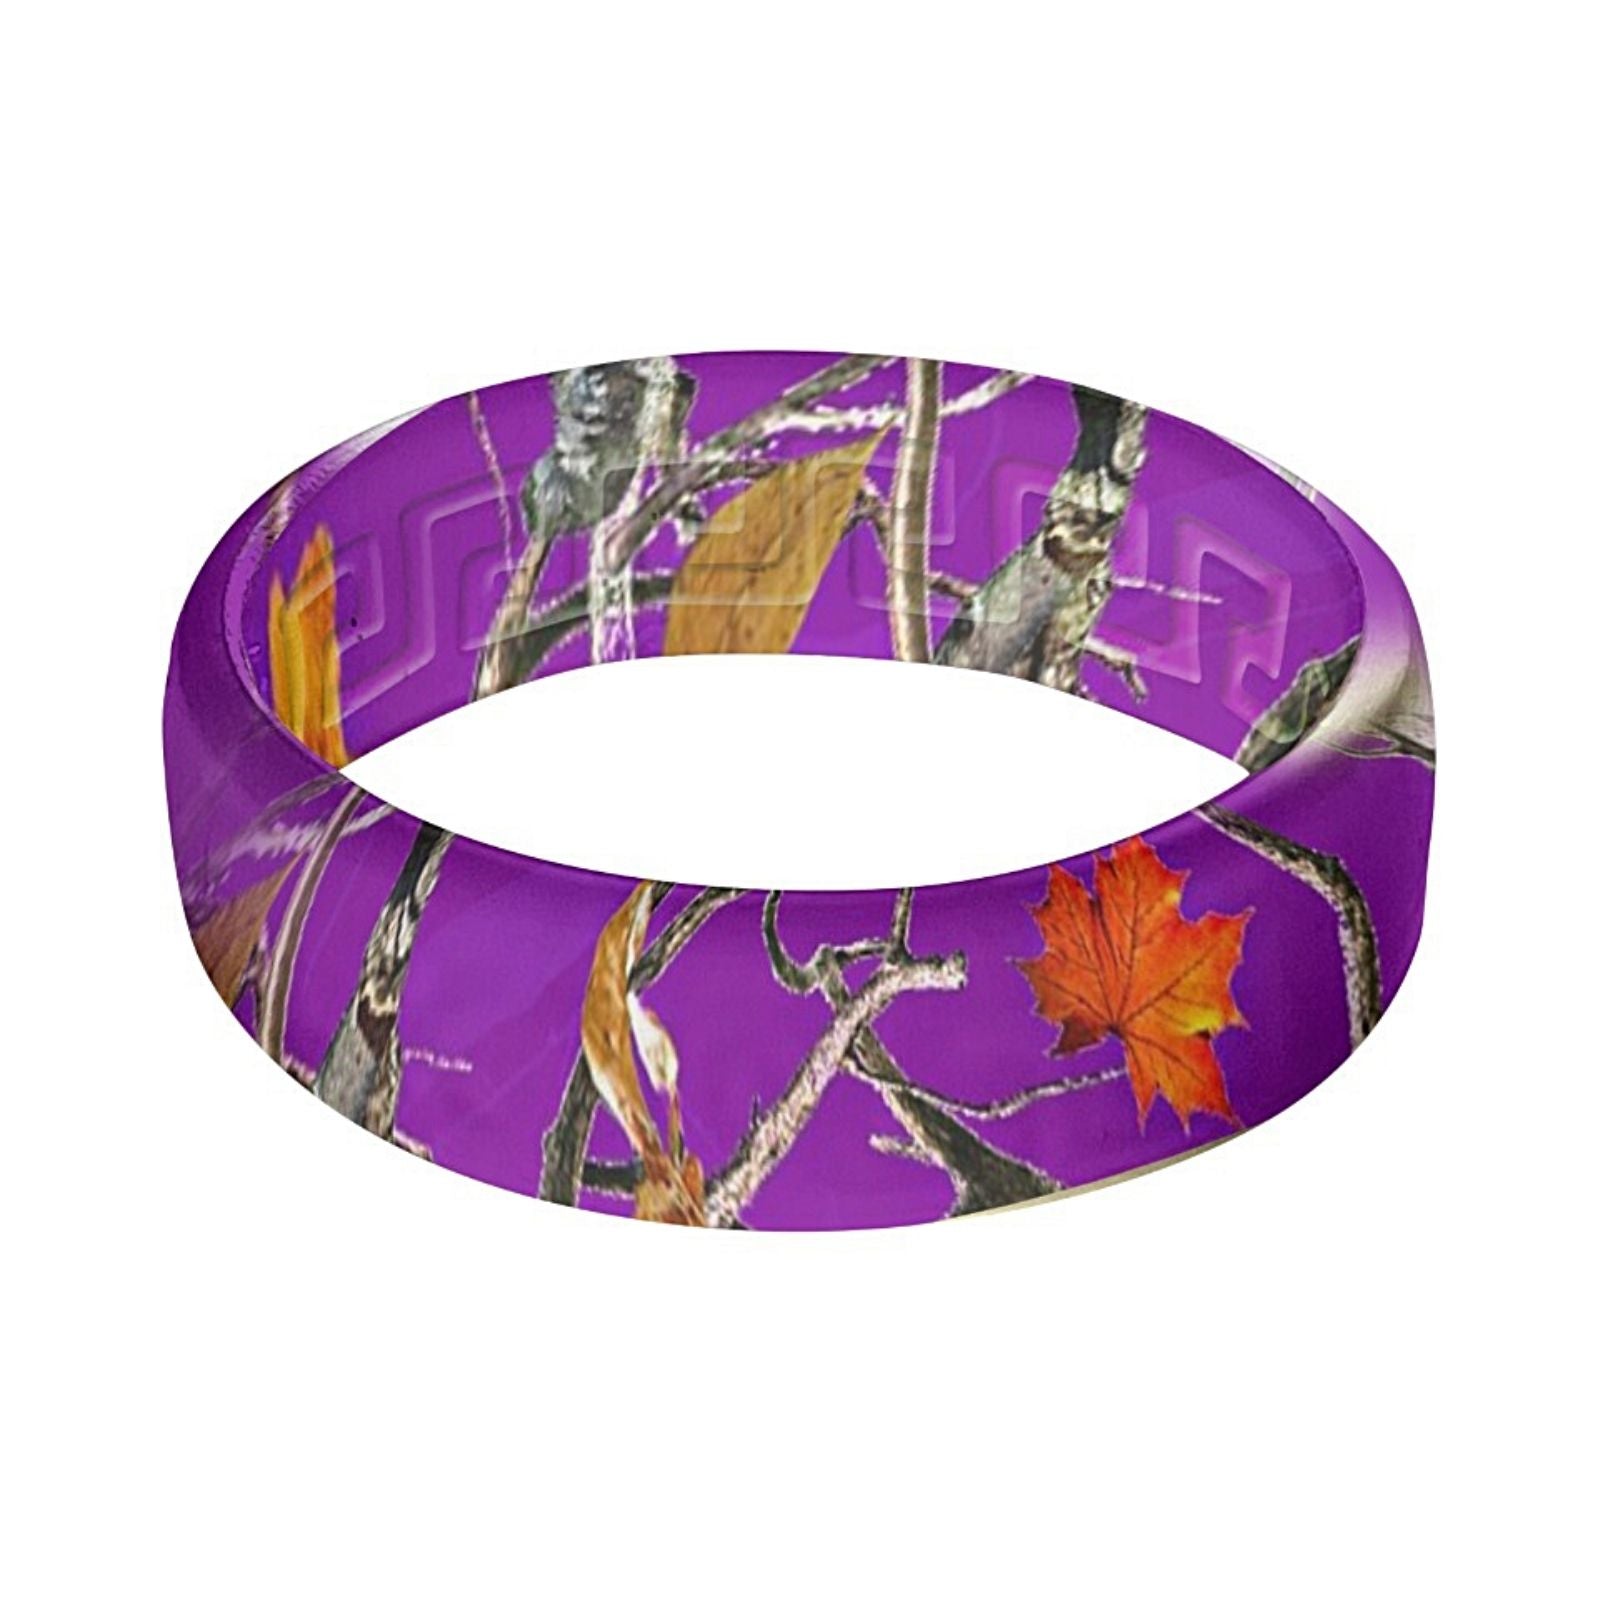 Purple Camo Silicone Ring - Ergonomic Silicone Camo Band with Lifetime Warranty